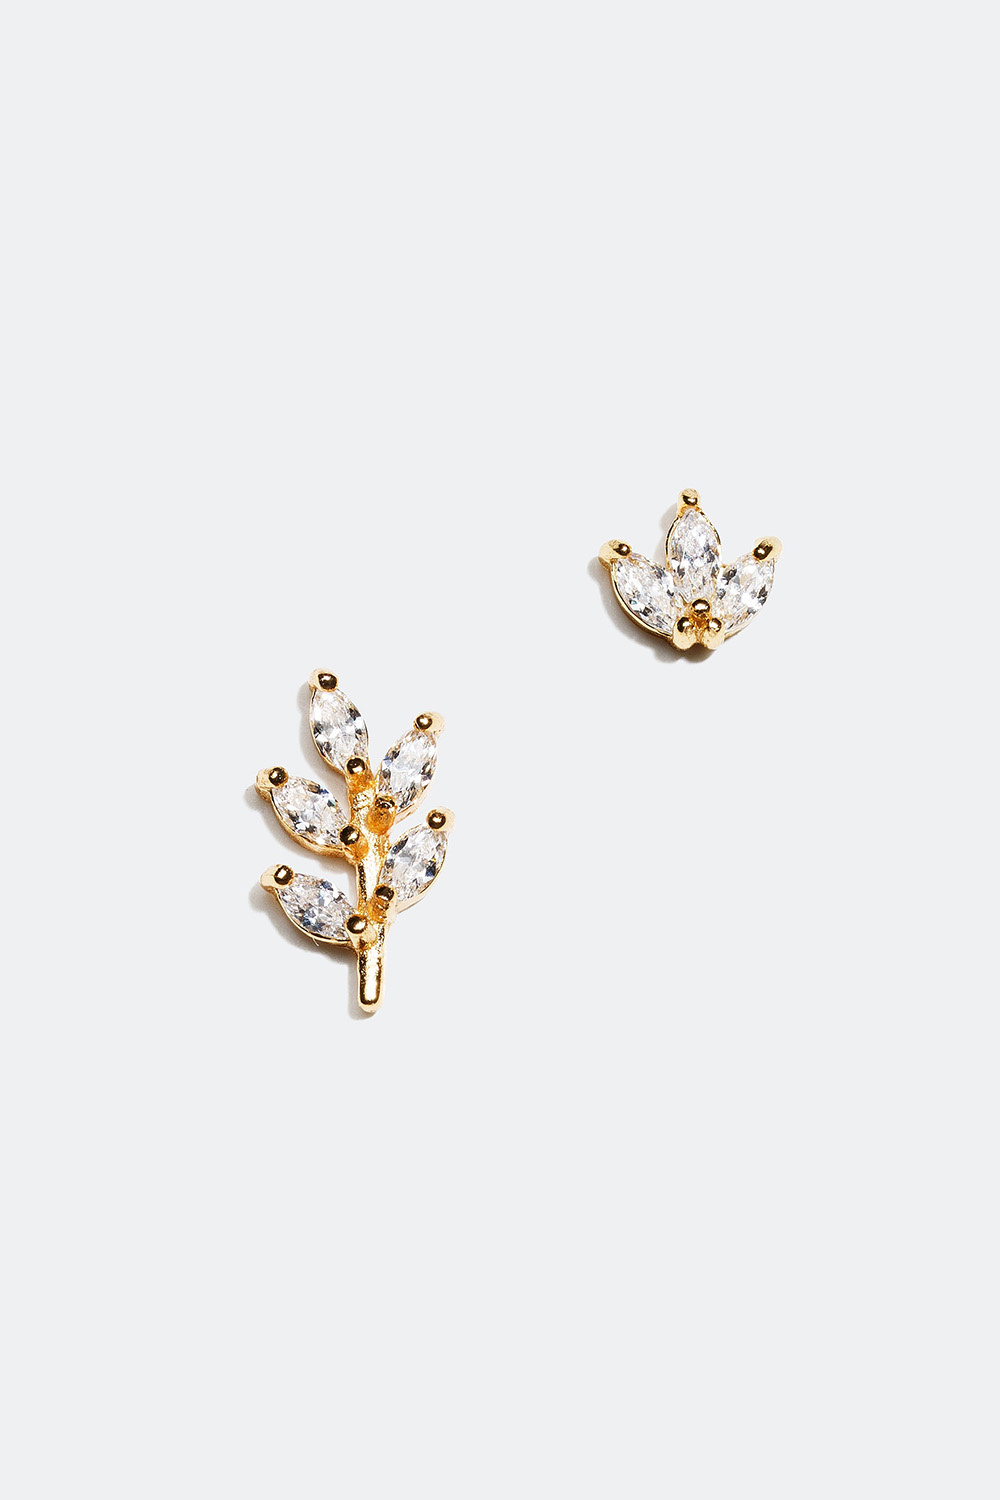 Små øreringe i forskellige størrelser med bladmotiv, forgyldt med 18 kt. guld